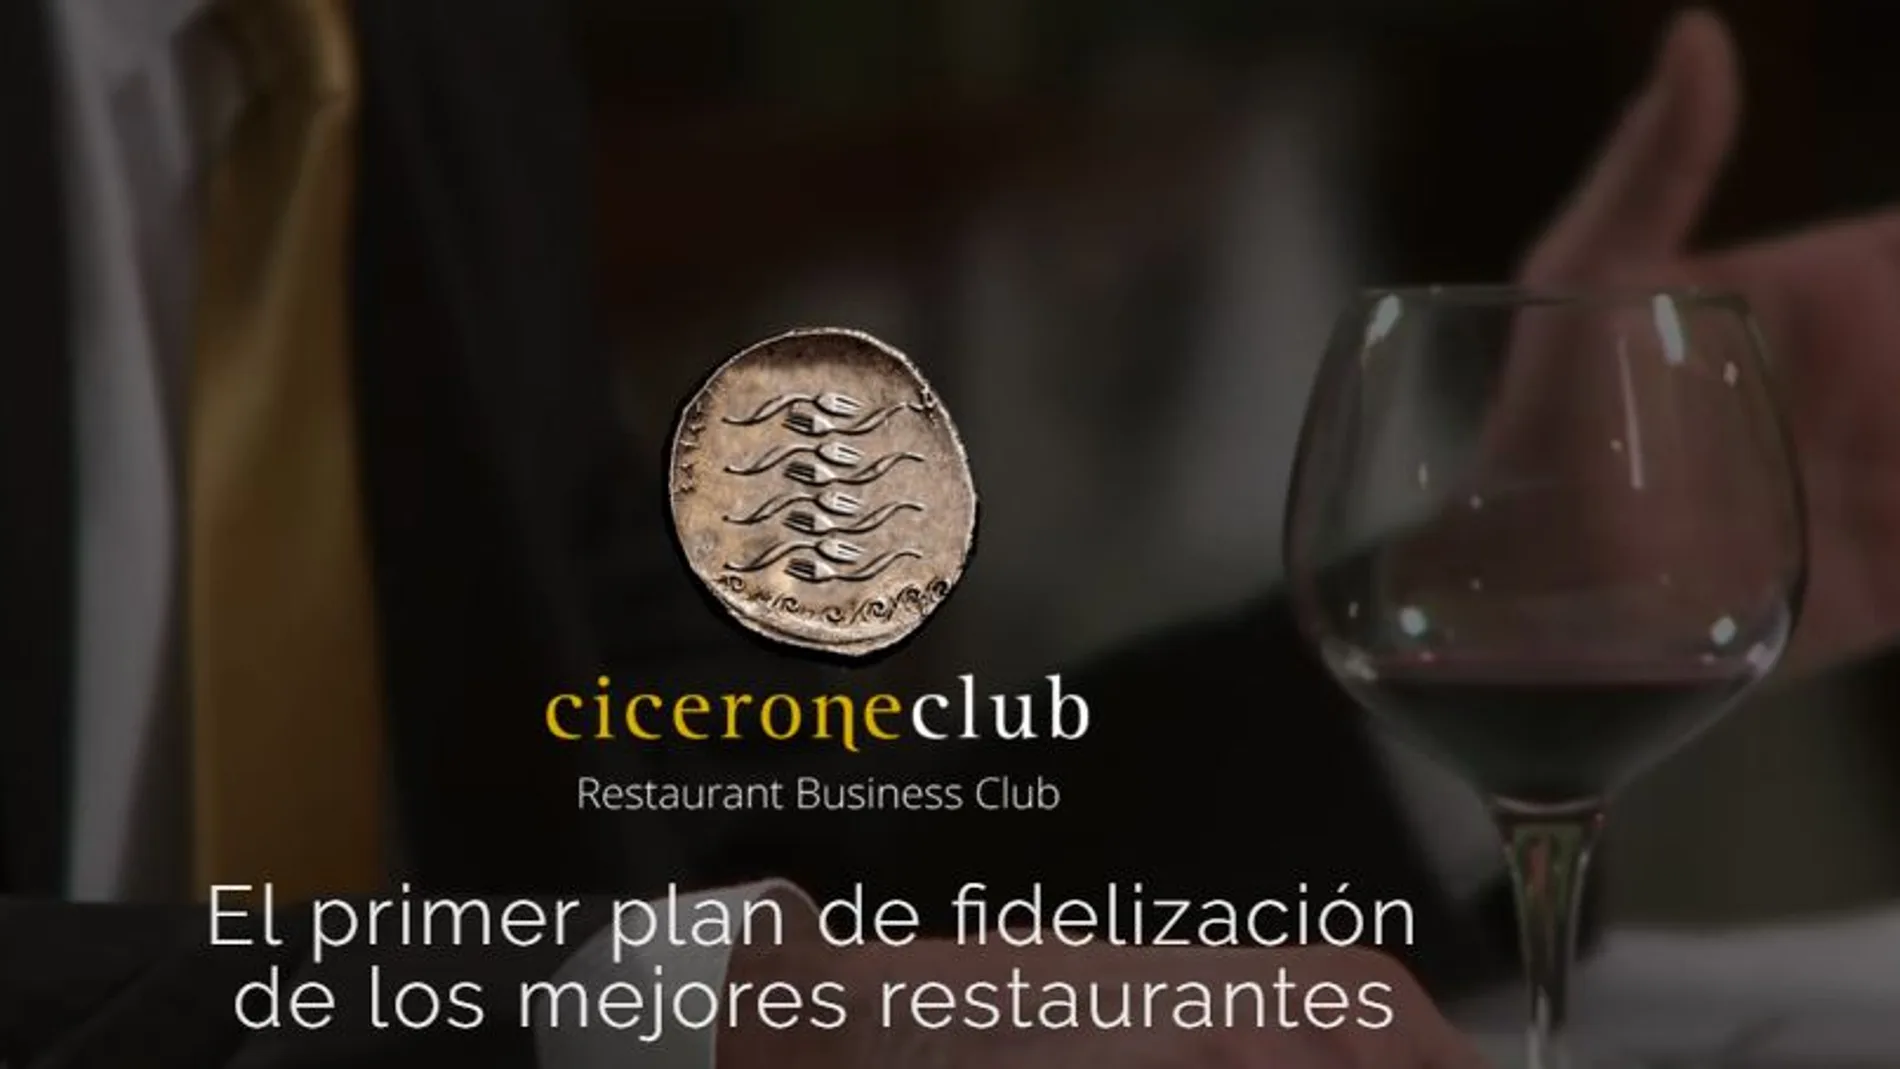 Fidelización para ejecutivos en restaurantes «premium», la apuesta de Ciceroneclub